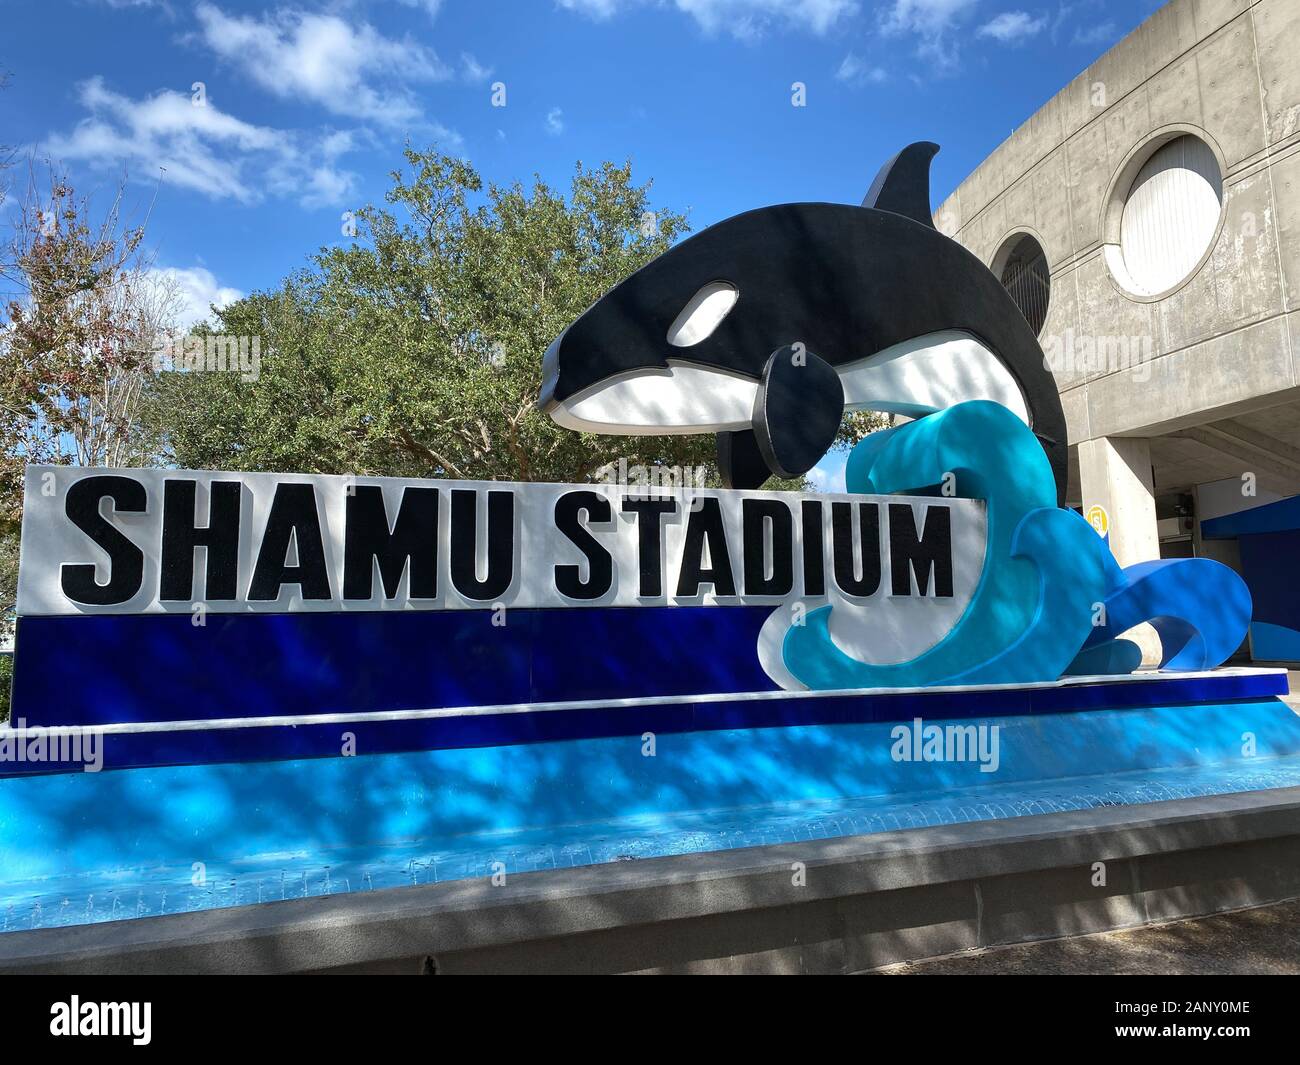 Orlando,FL/USA-1/17/20: The Shamu Stadium sign outside of the ampitheater at SeaWorld Orlando, Florida. Stock Photo